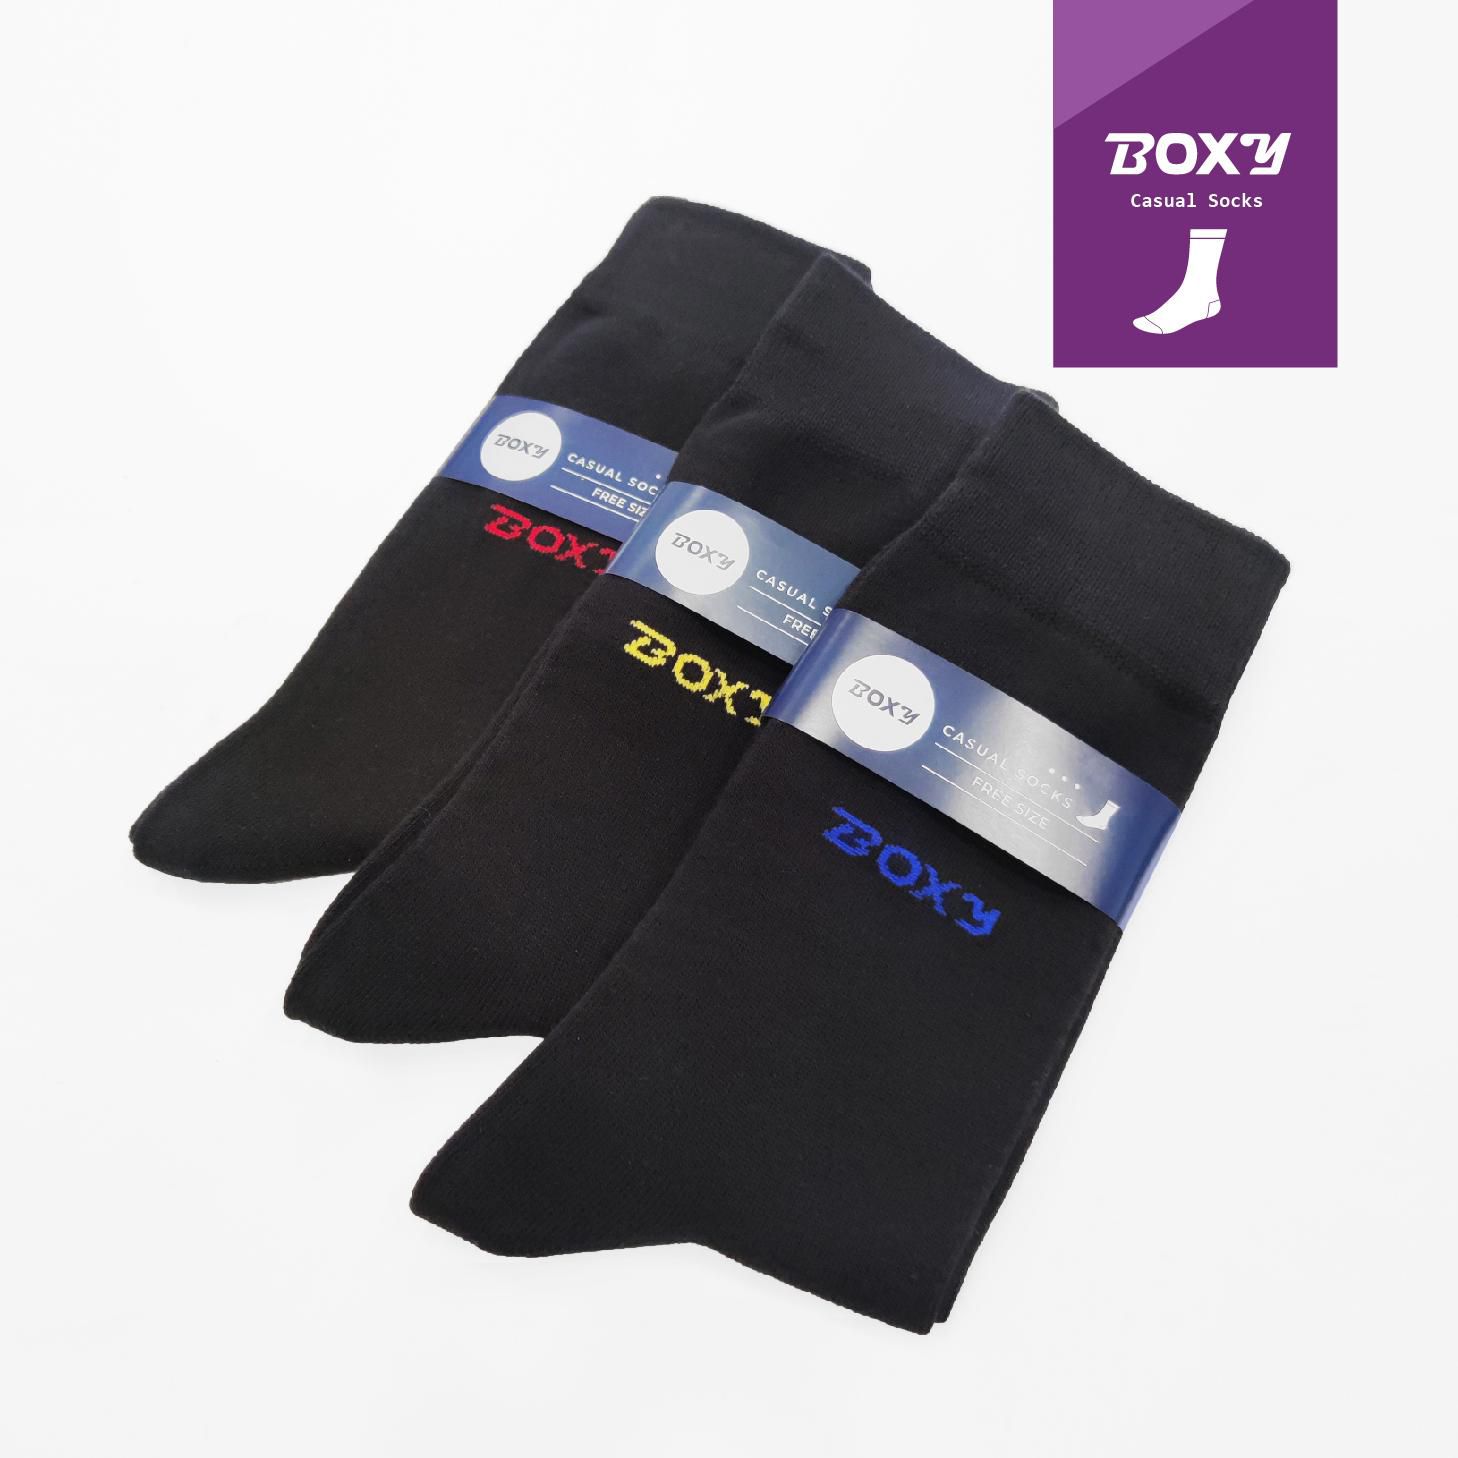 Boxy Men's Socks (Black)